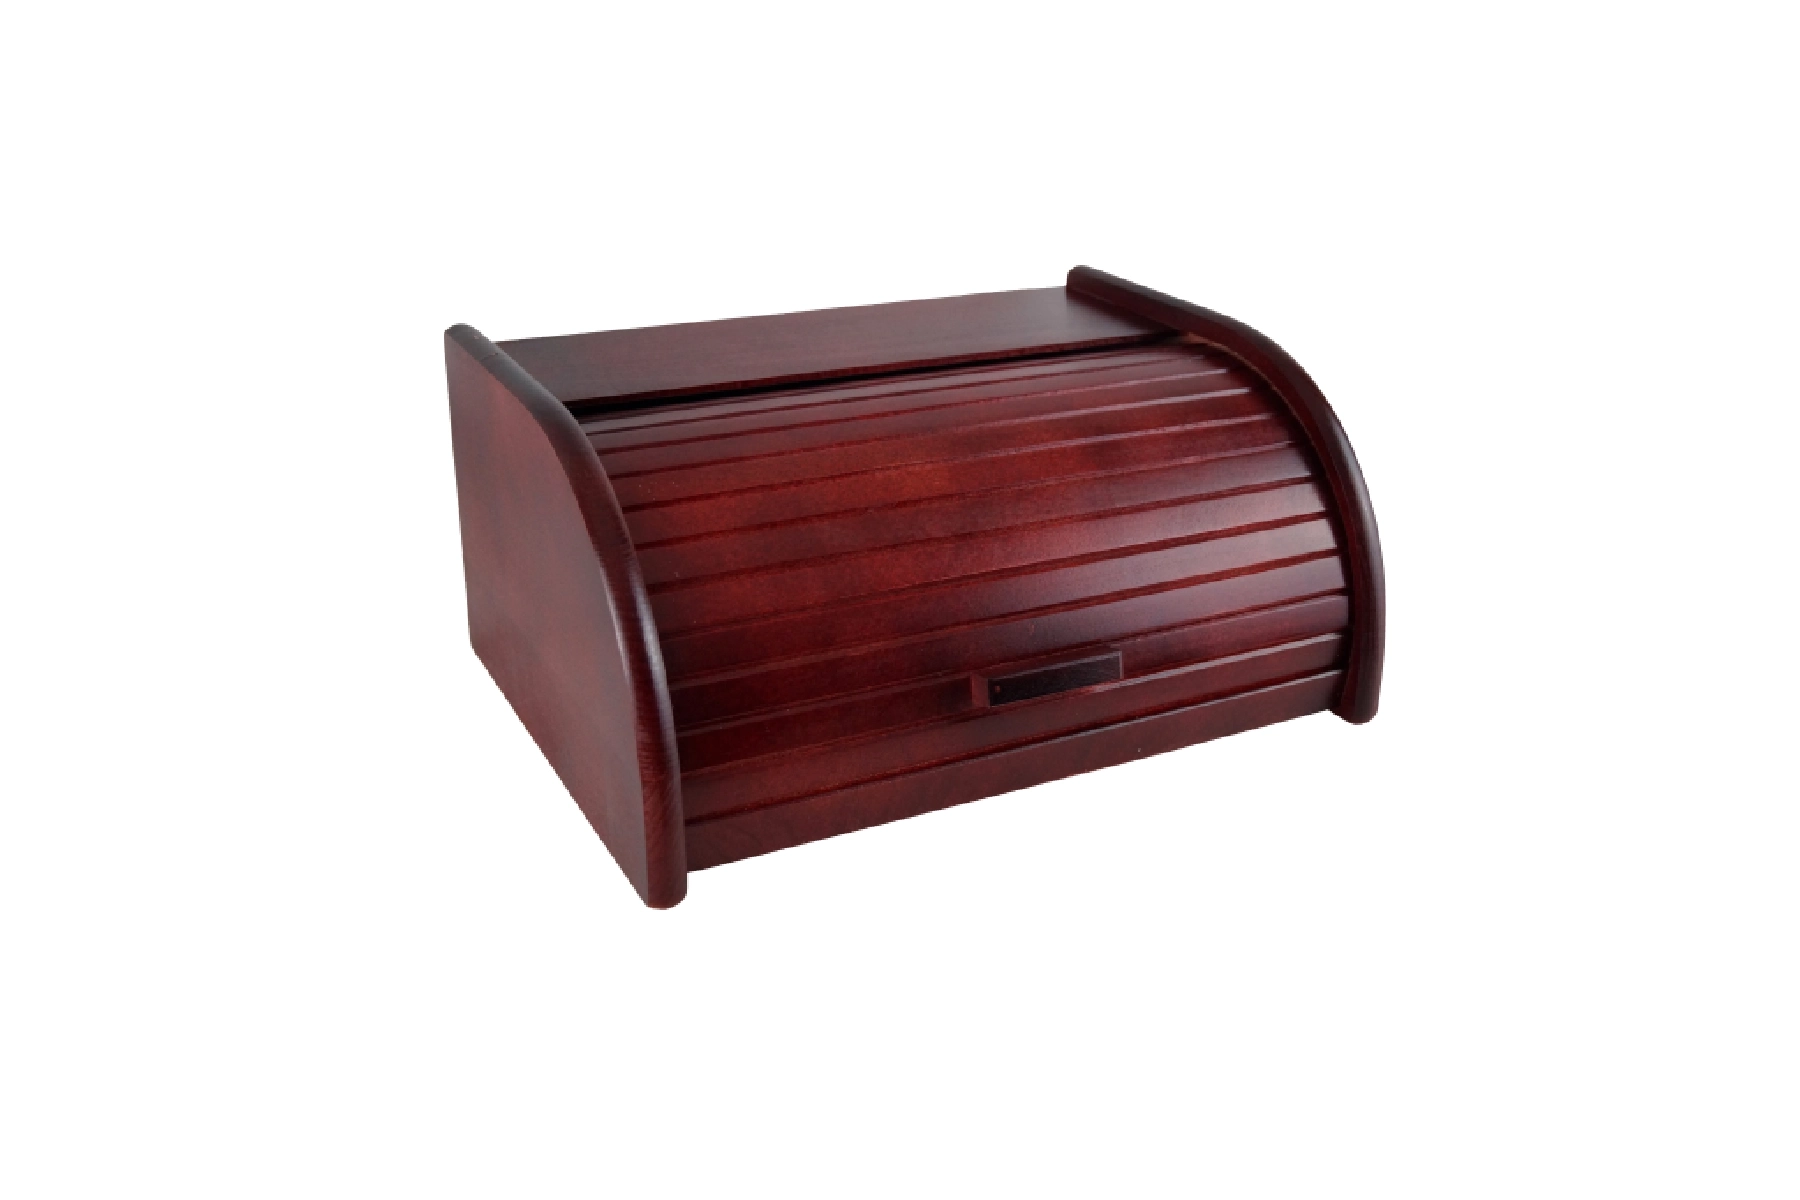 Mahogany wooden bread box PEEWIT Ryglice